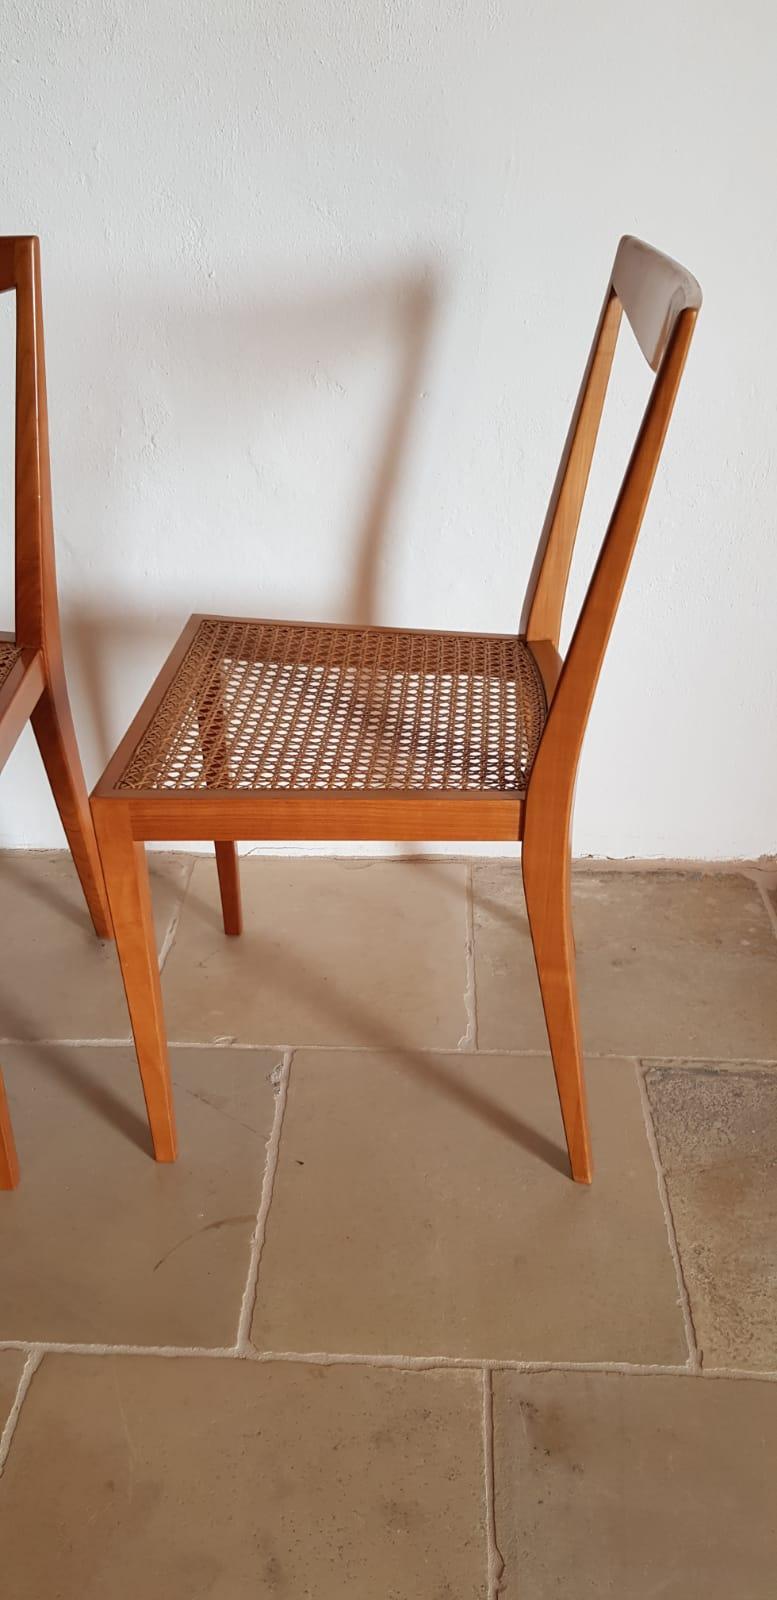 Chaises de salle à manger élégantes, conçues par Hans Wölfl à Vienne dans les années 1950. Les chaises sont fabriquées en bois dur massif, avec des pieds coniques. Bon état vintage.
Lot de quatre délai de livraison 3-4 semaines, la canne est